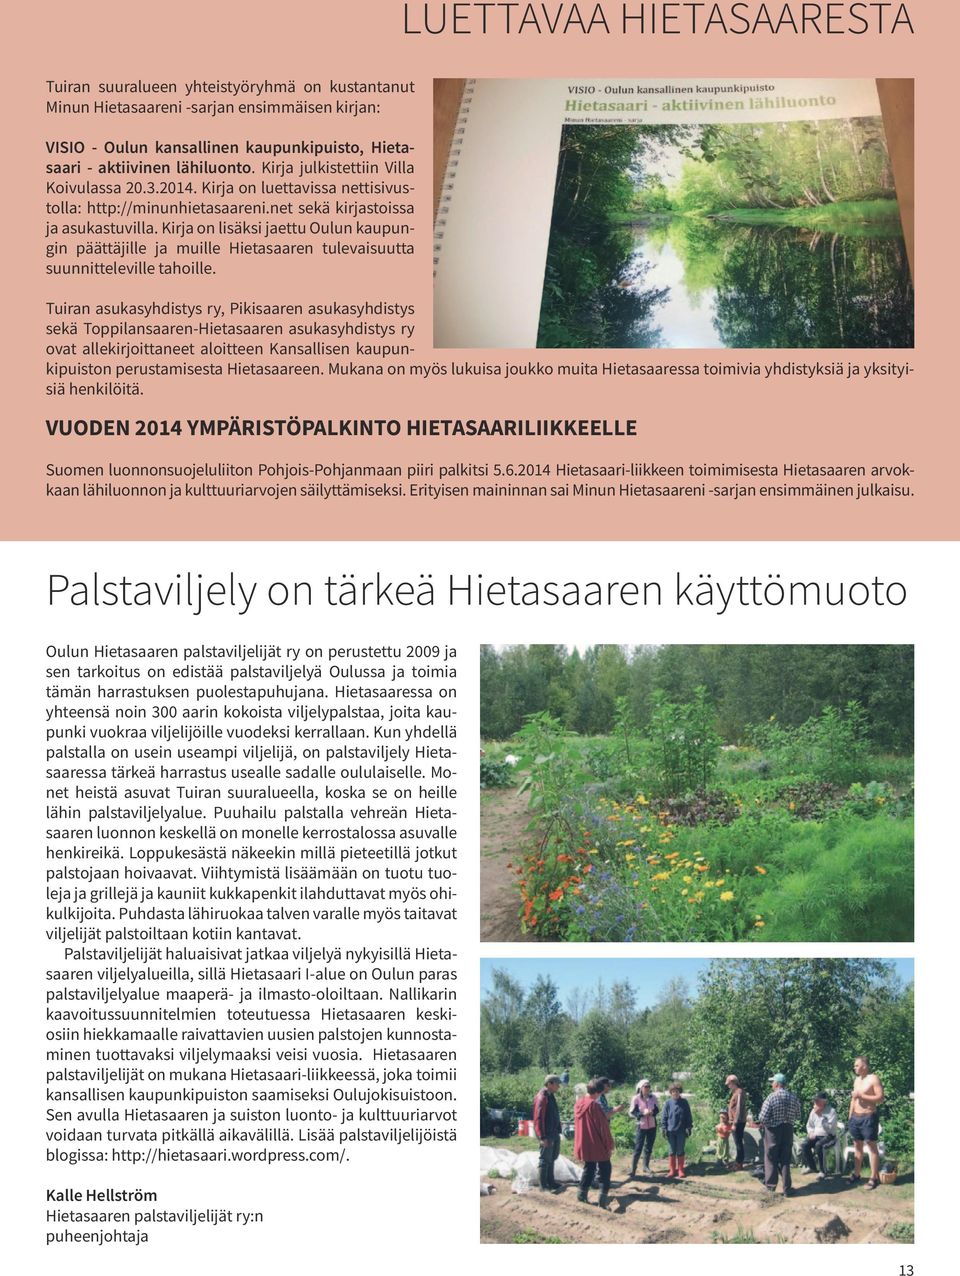 Kirja on lisäksi jaettu Oulun kaupungin päättäjille ja muille Hietasaaren tulevaisuutta suunnitteleville tahoille.